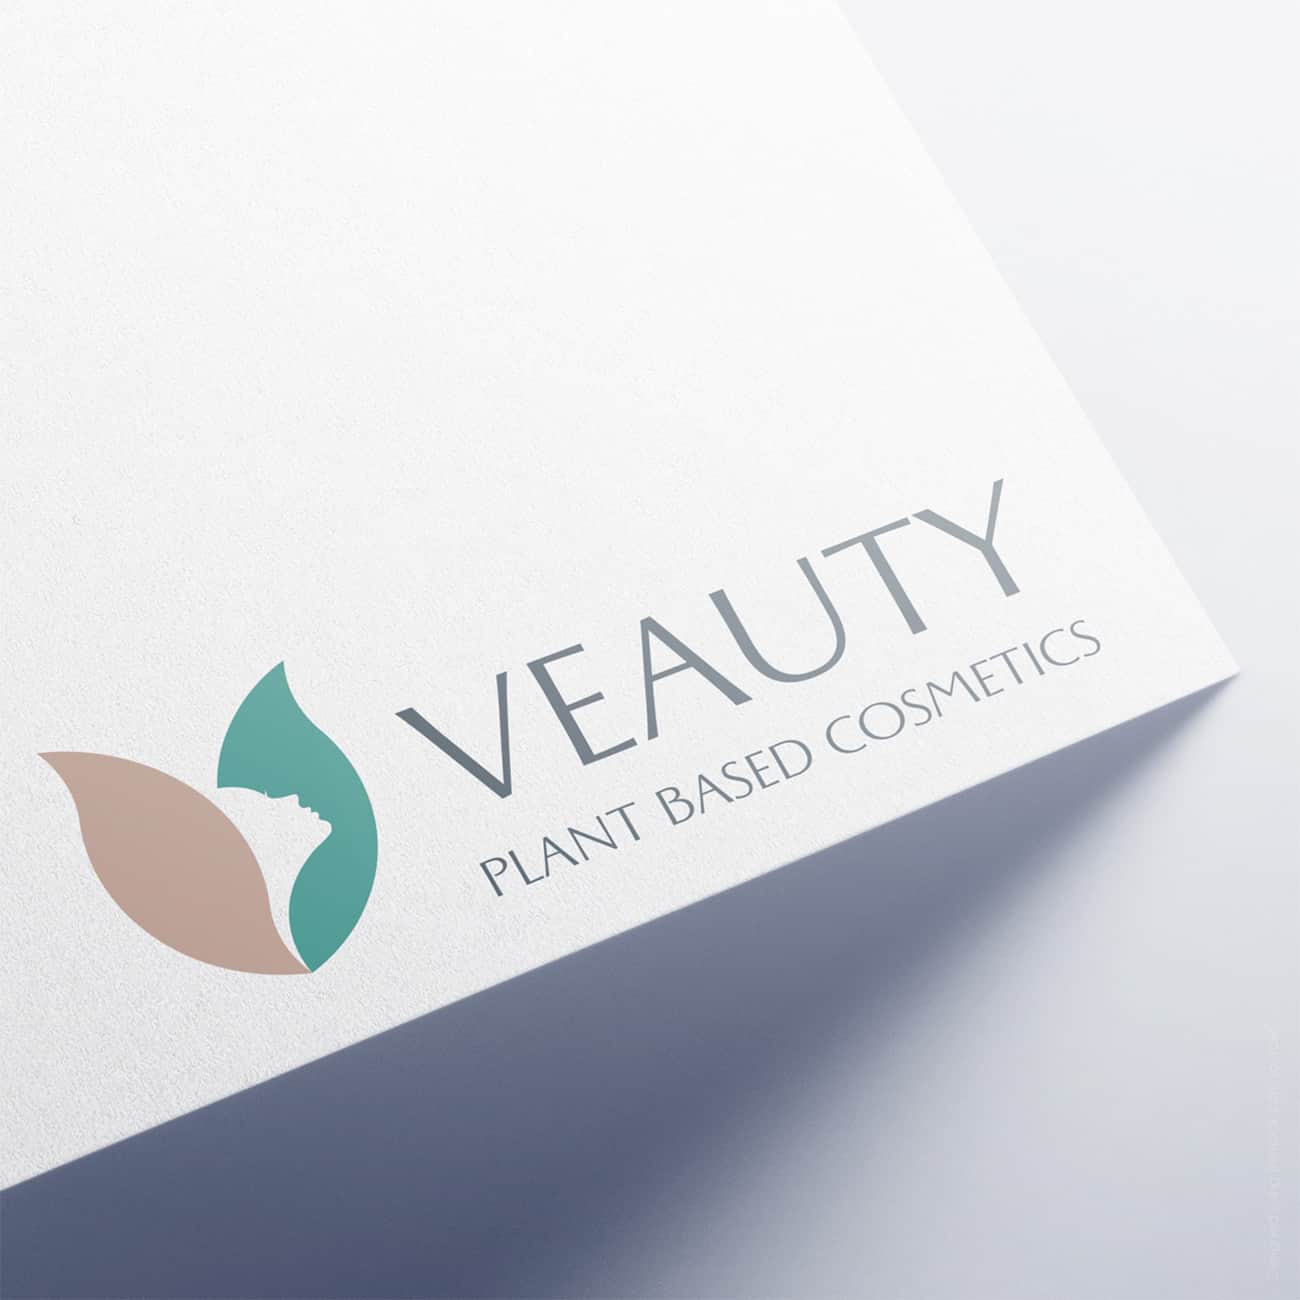 Progettazione-logo-veauty-e-immagine-coordinata